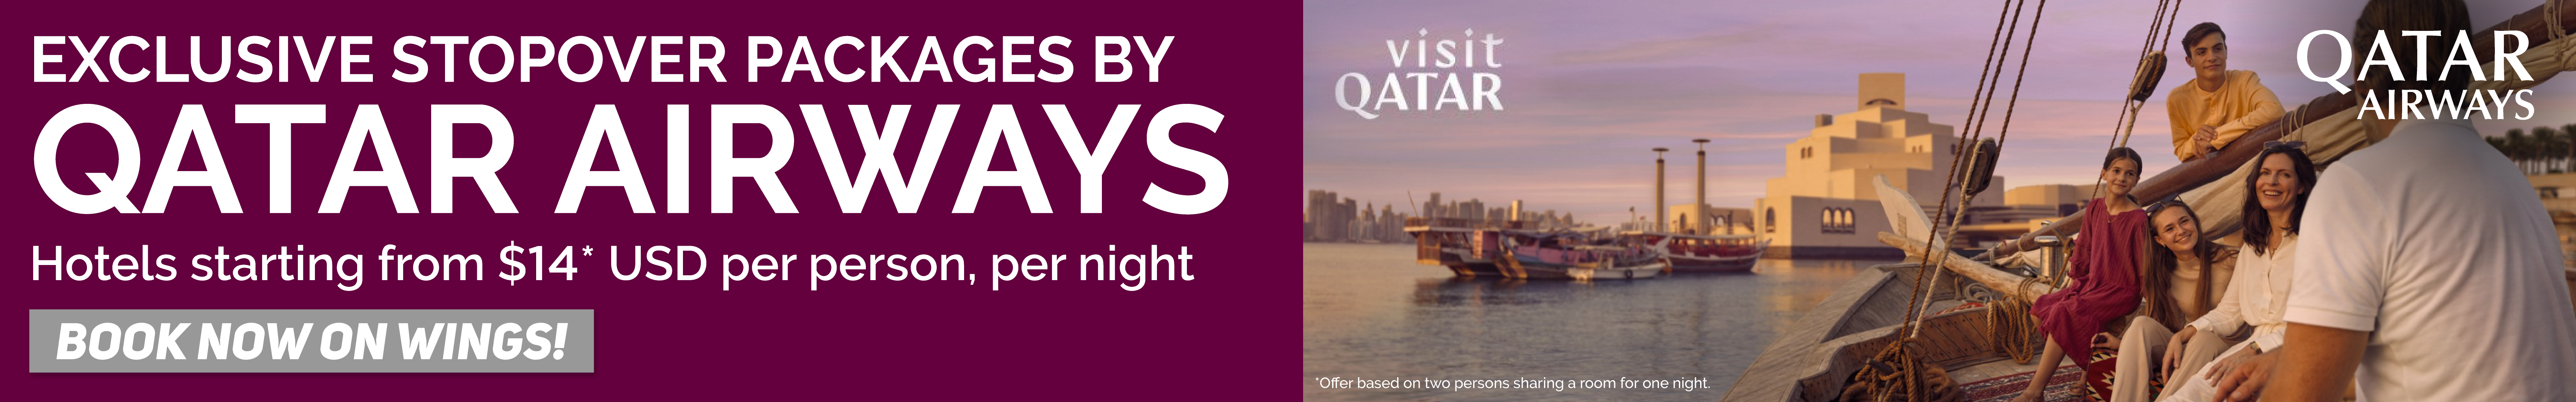 Sky Bird Qatar Airways Stopover campaign_Sky Bird Homepage Banner